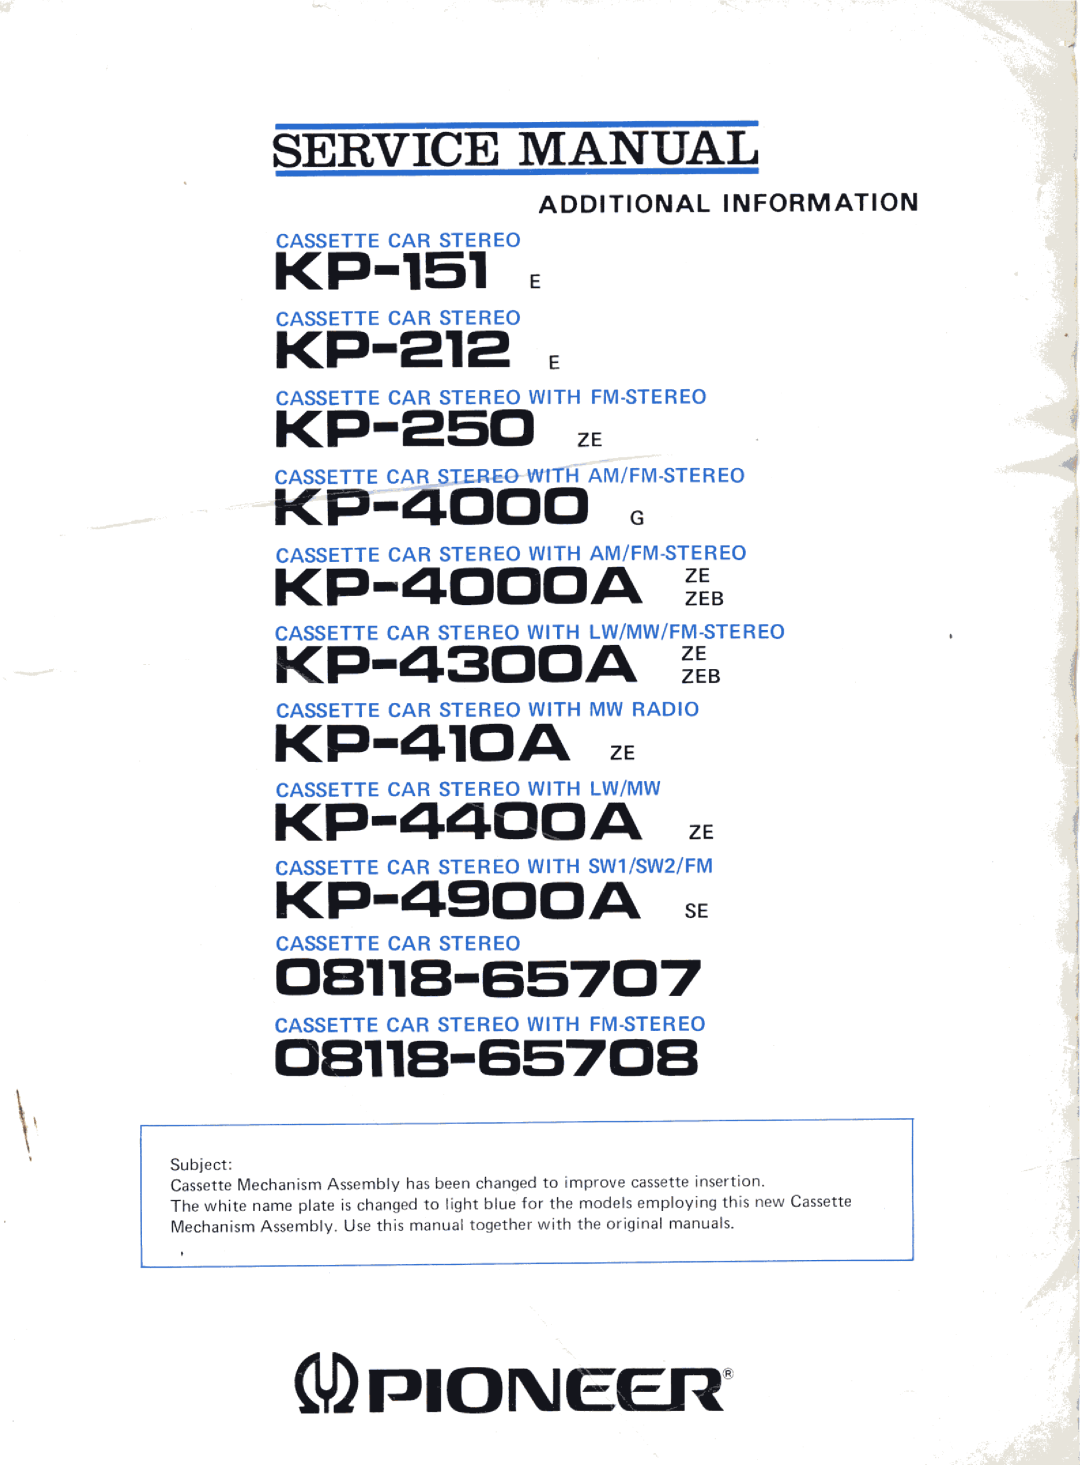 Pioneer KP-4000A, KP-410A, KP-4300A, KP-4400A, KP-250, KP-212, KP-4900A, KP-151, 08118-65707, 08118-65708 manual 